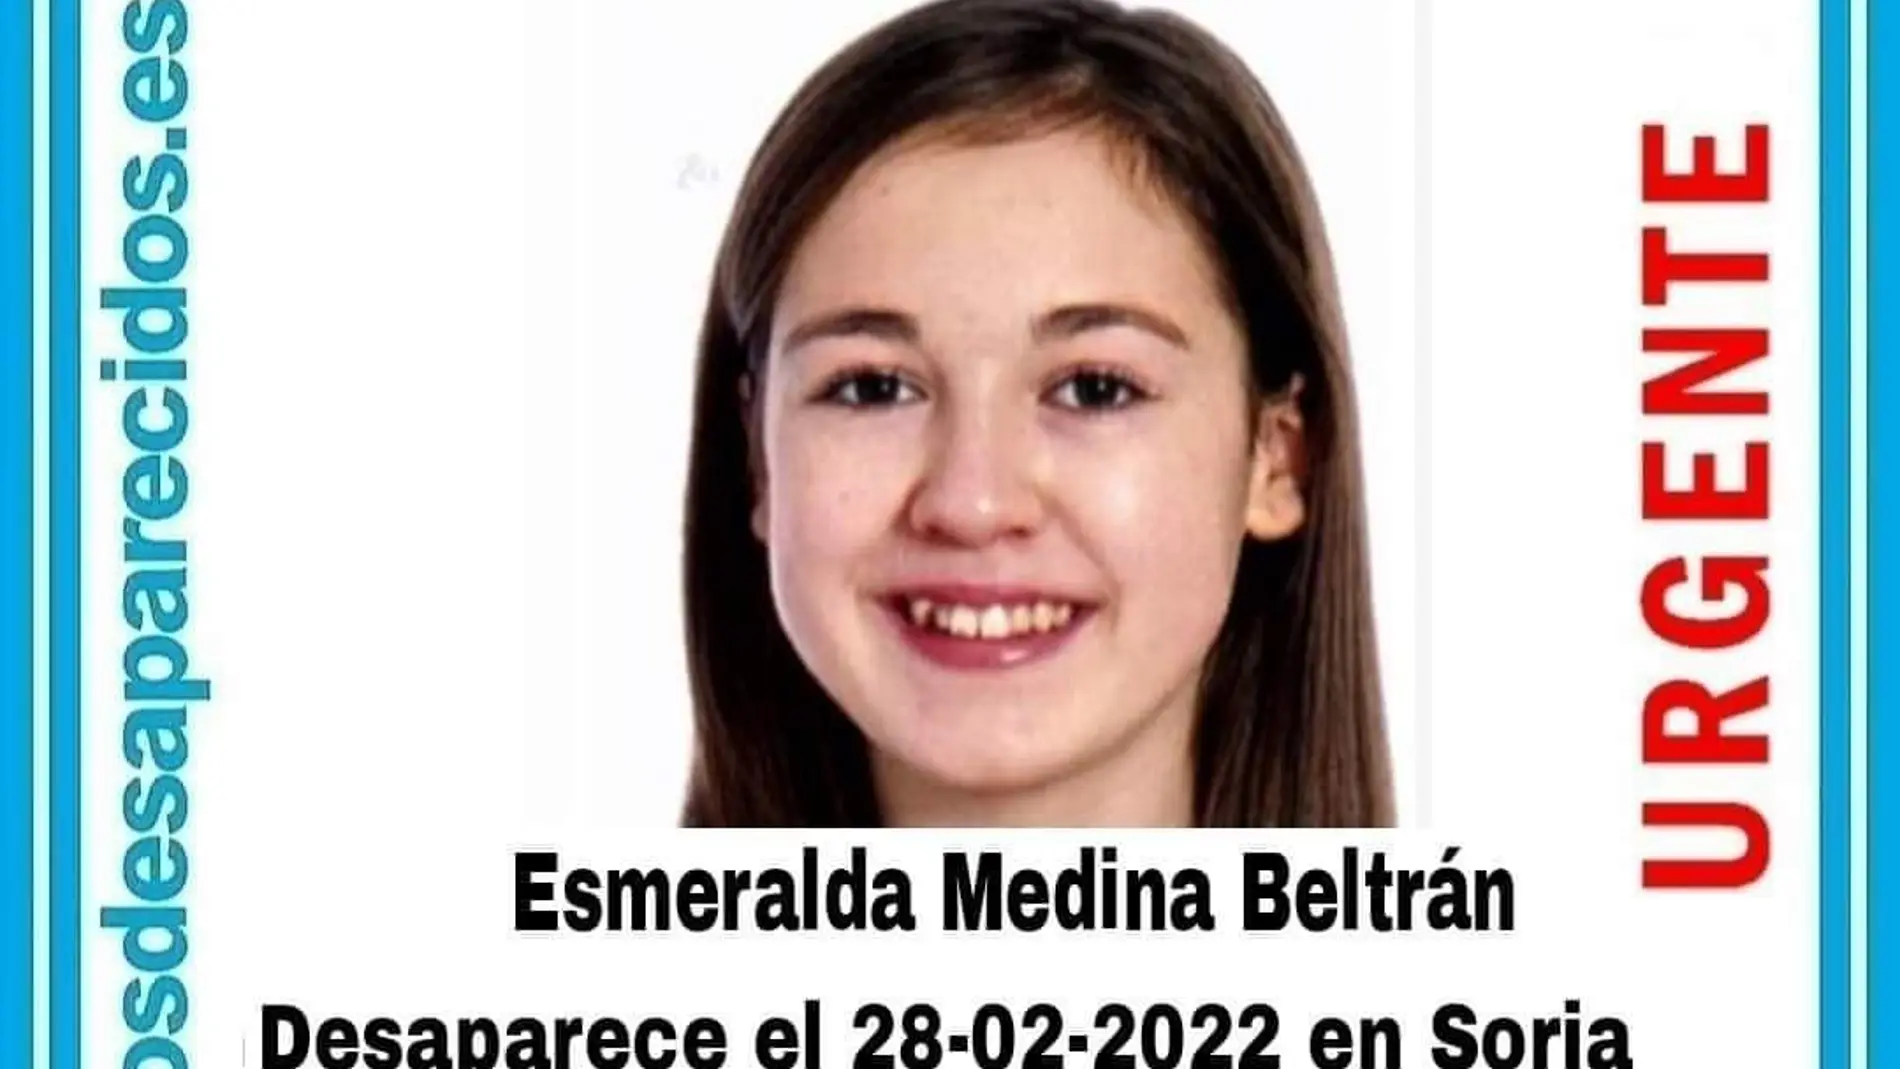 Buscan a una niña de 13 años desaparecida en Soria el pasado 28 de febrero